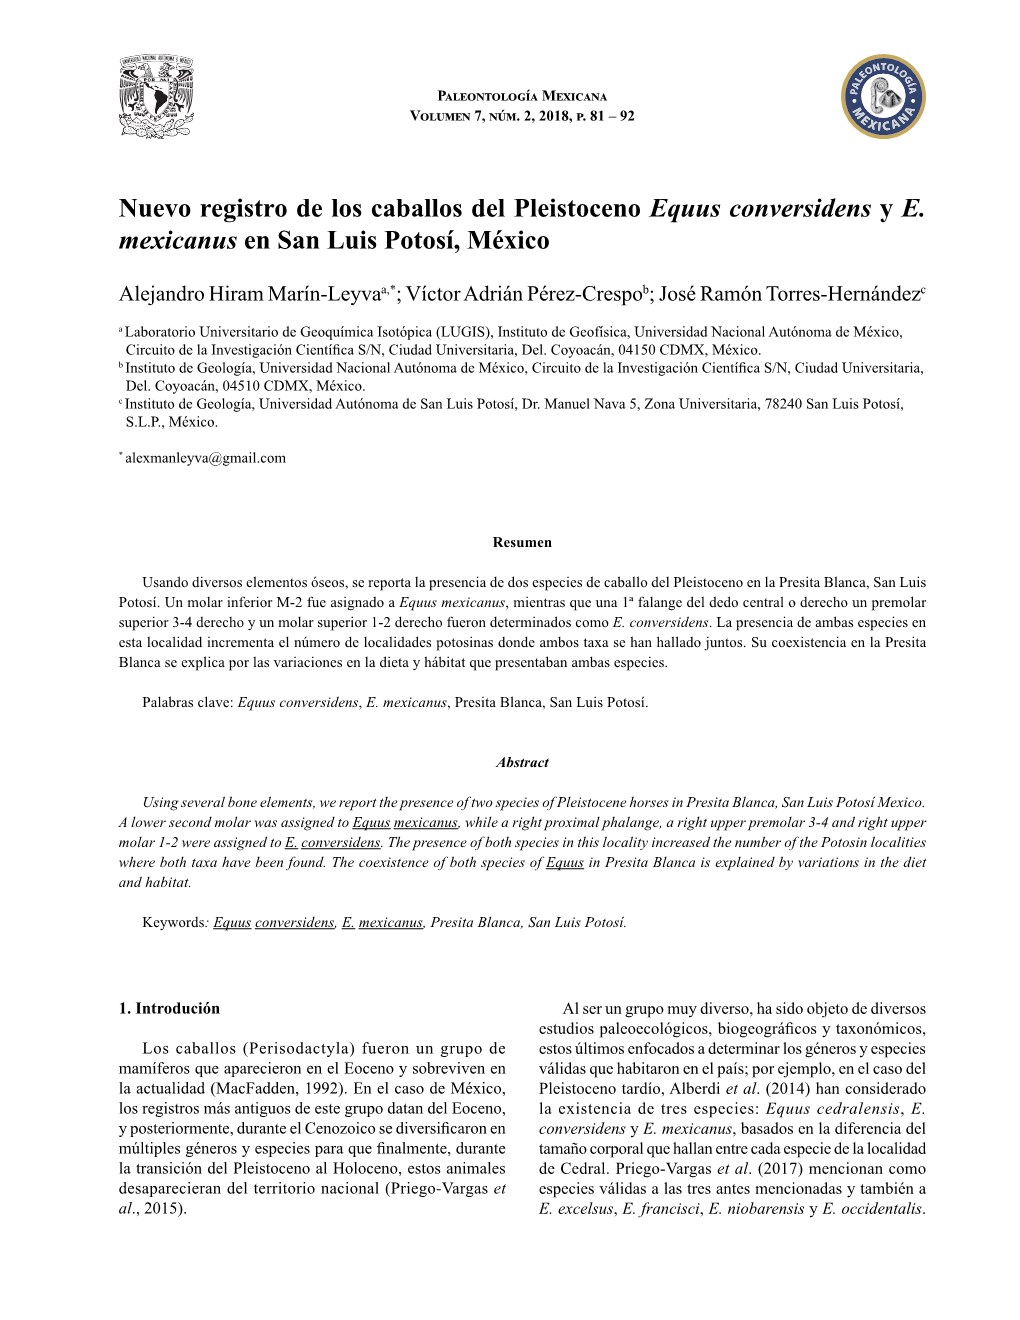 Nuevo Registro De Los Caballos Del Pleistoceno Equus Conversidens Y E